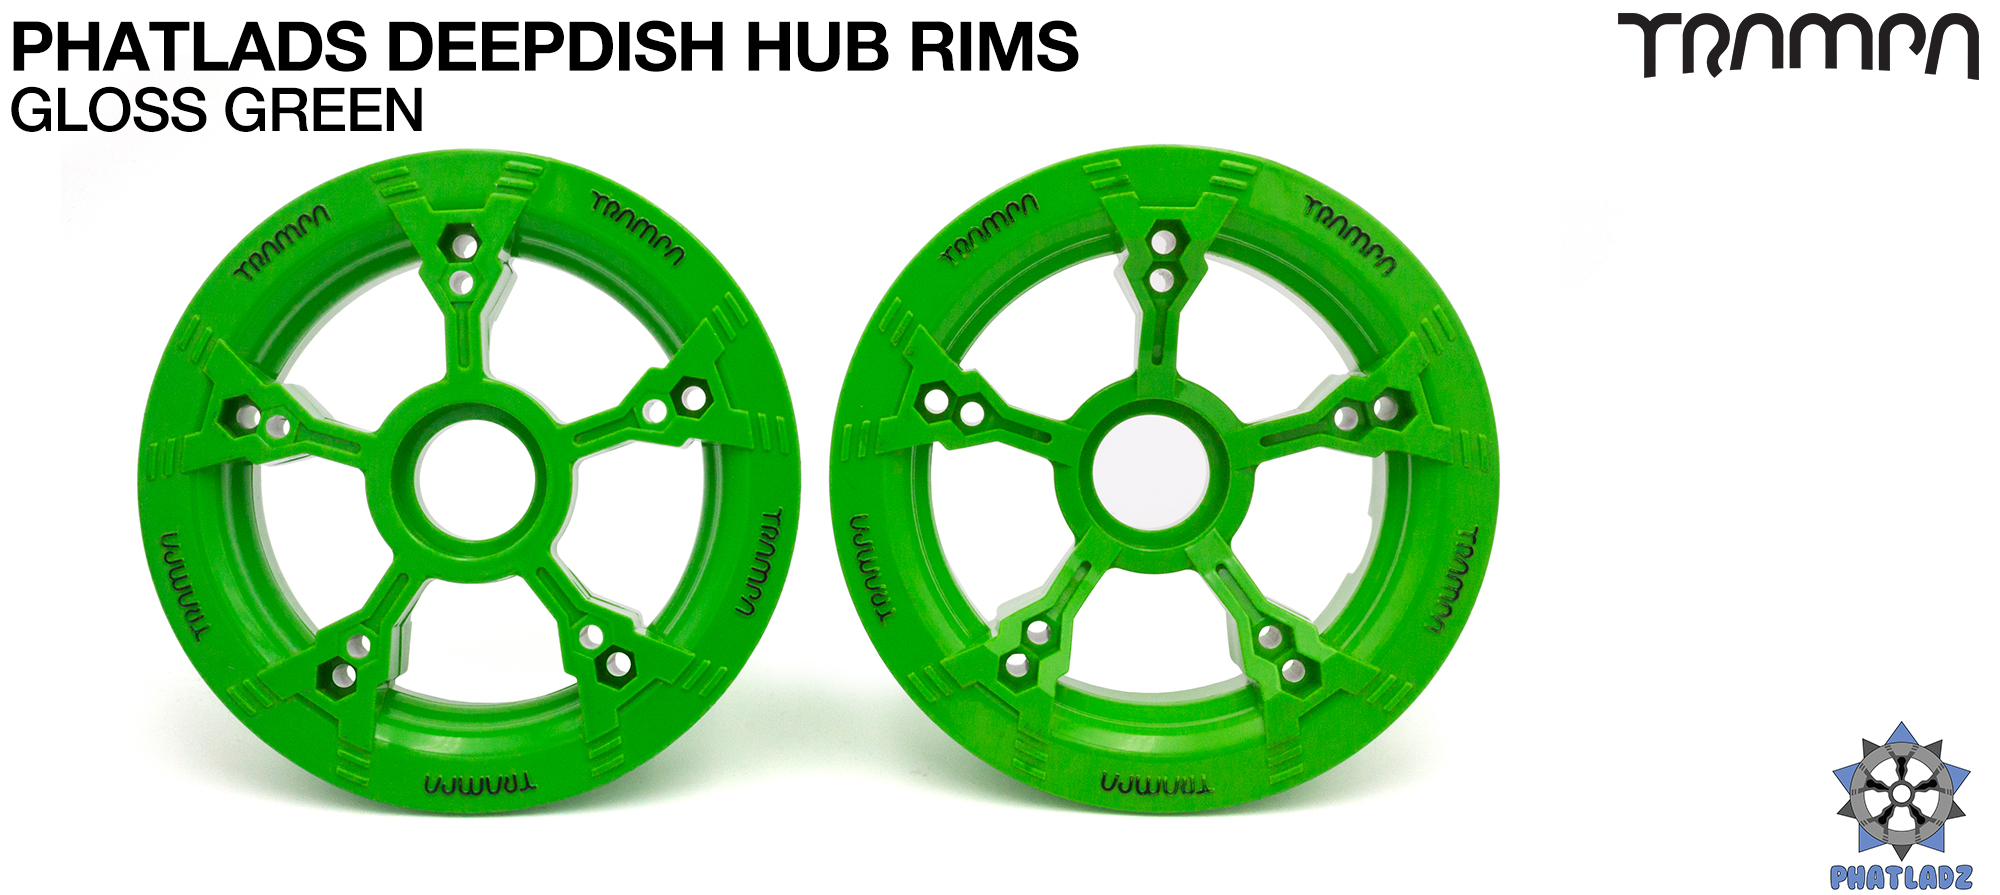 PHATLADS - 5 Spoke Hub Deep Dish Split Rim hub fits 6,7,8,9 & 10 Inch tyres!! Amazing